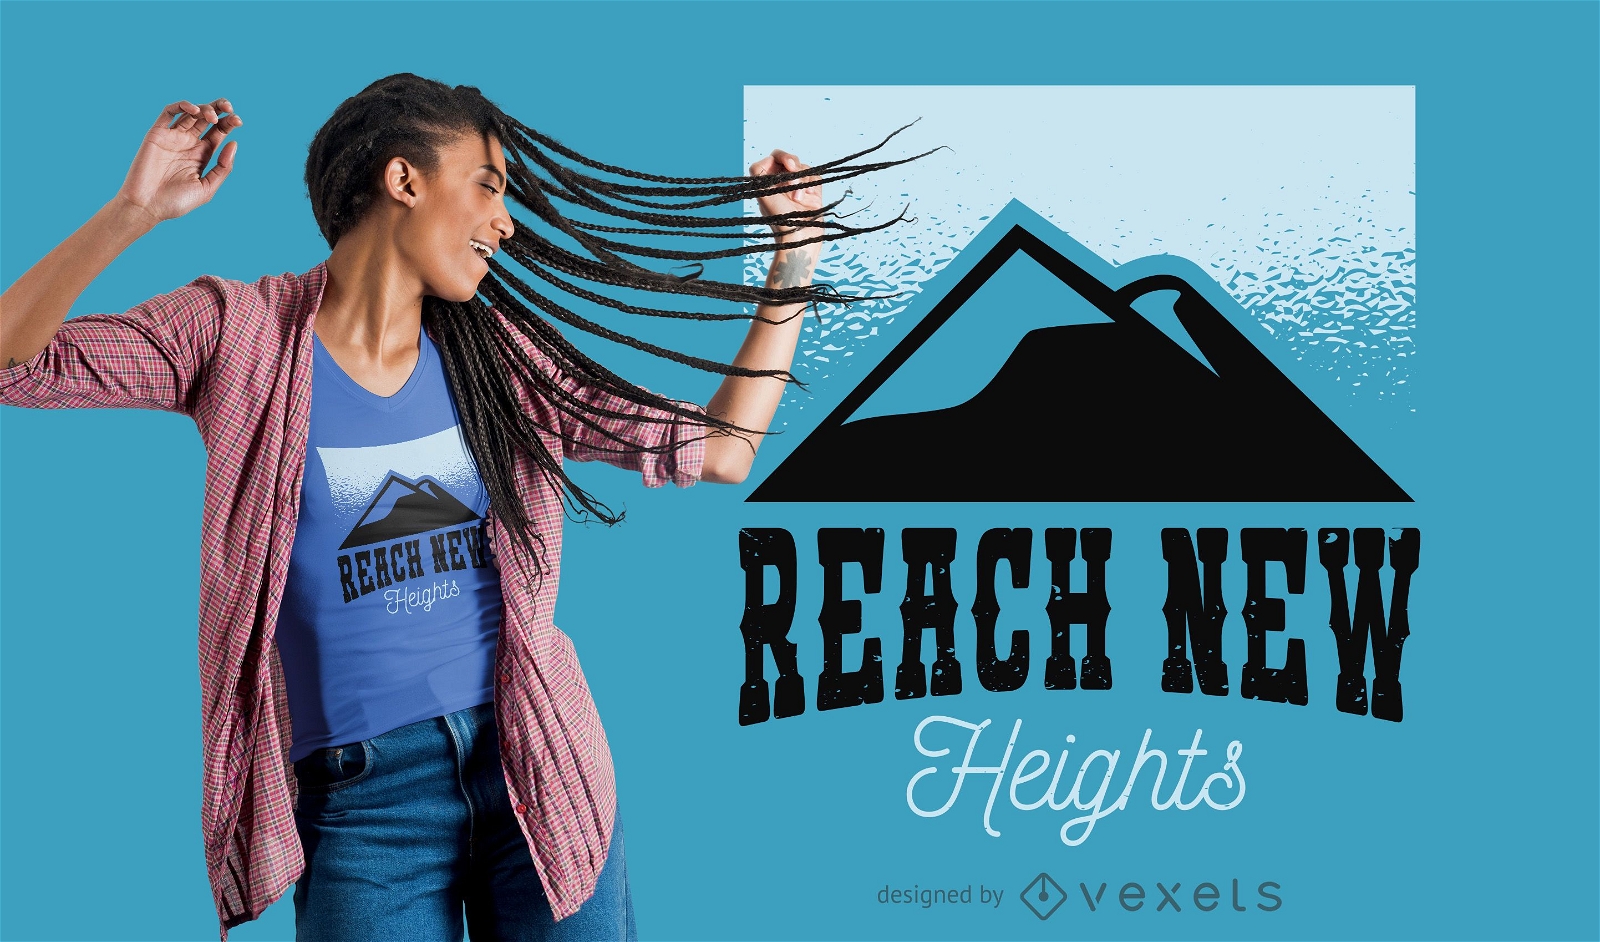 Reach new heights t-shirt design